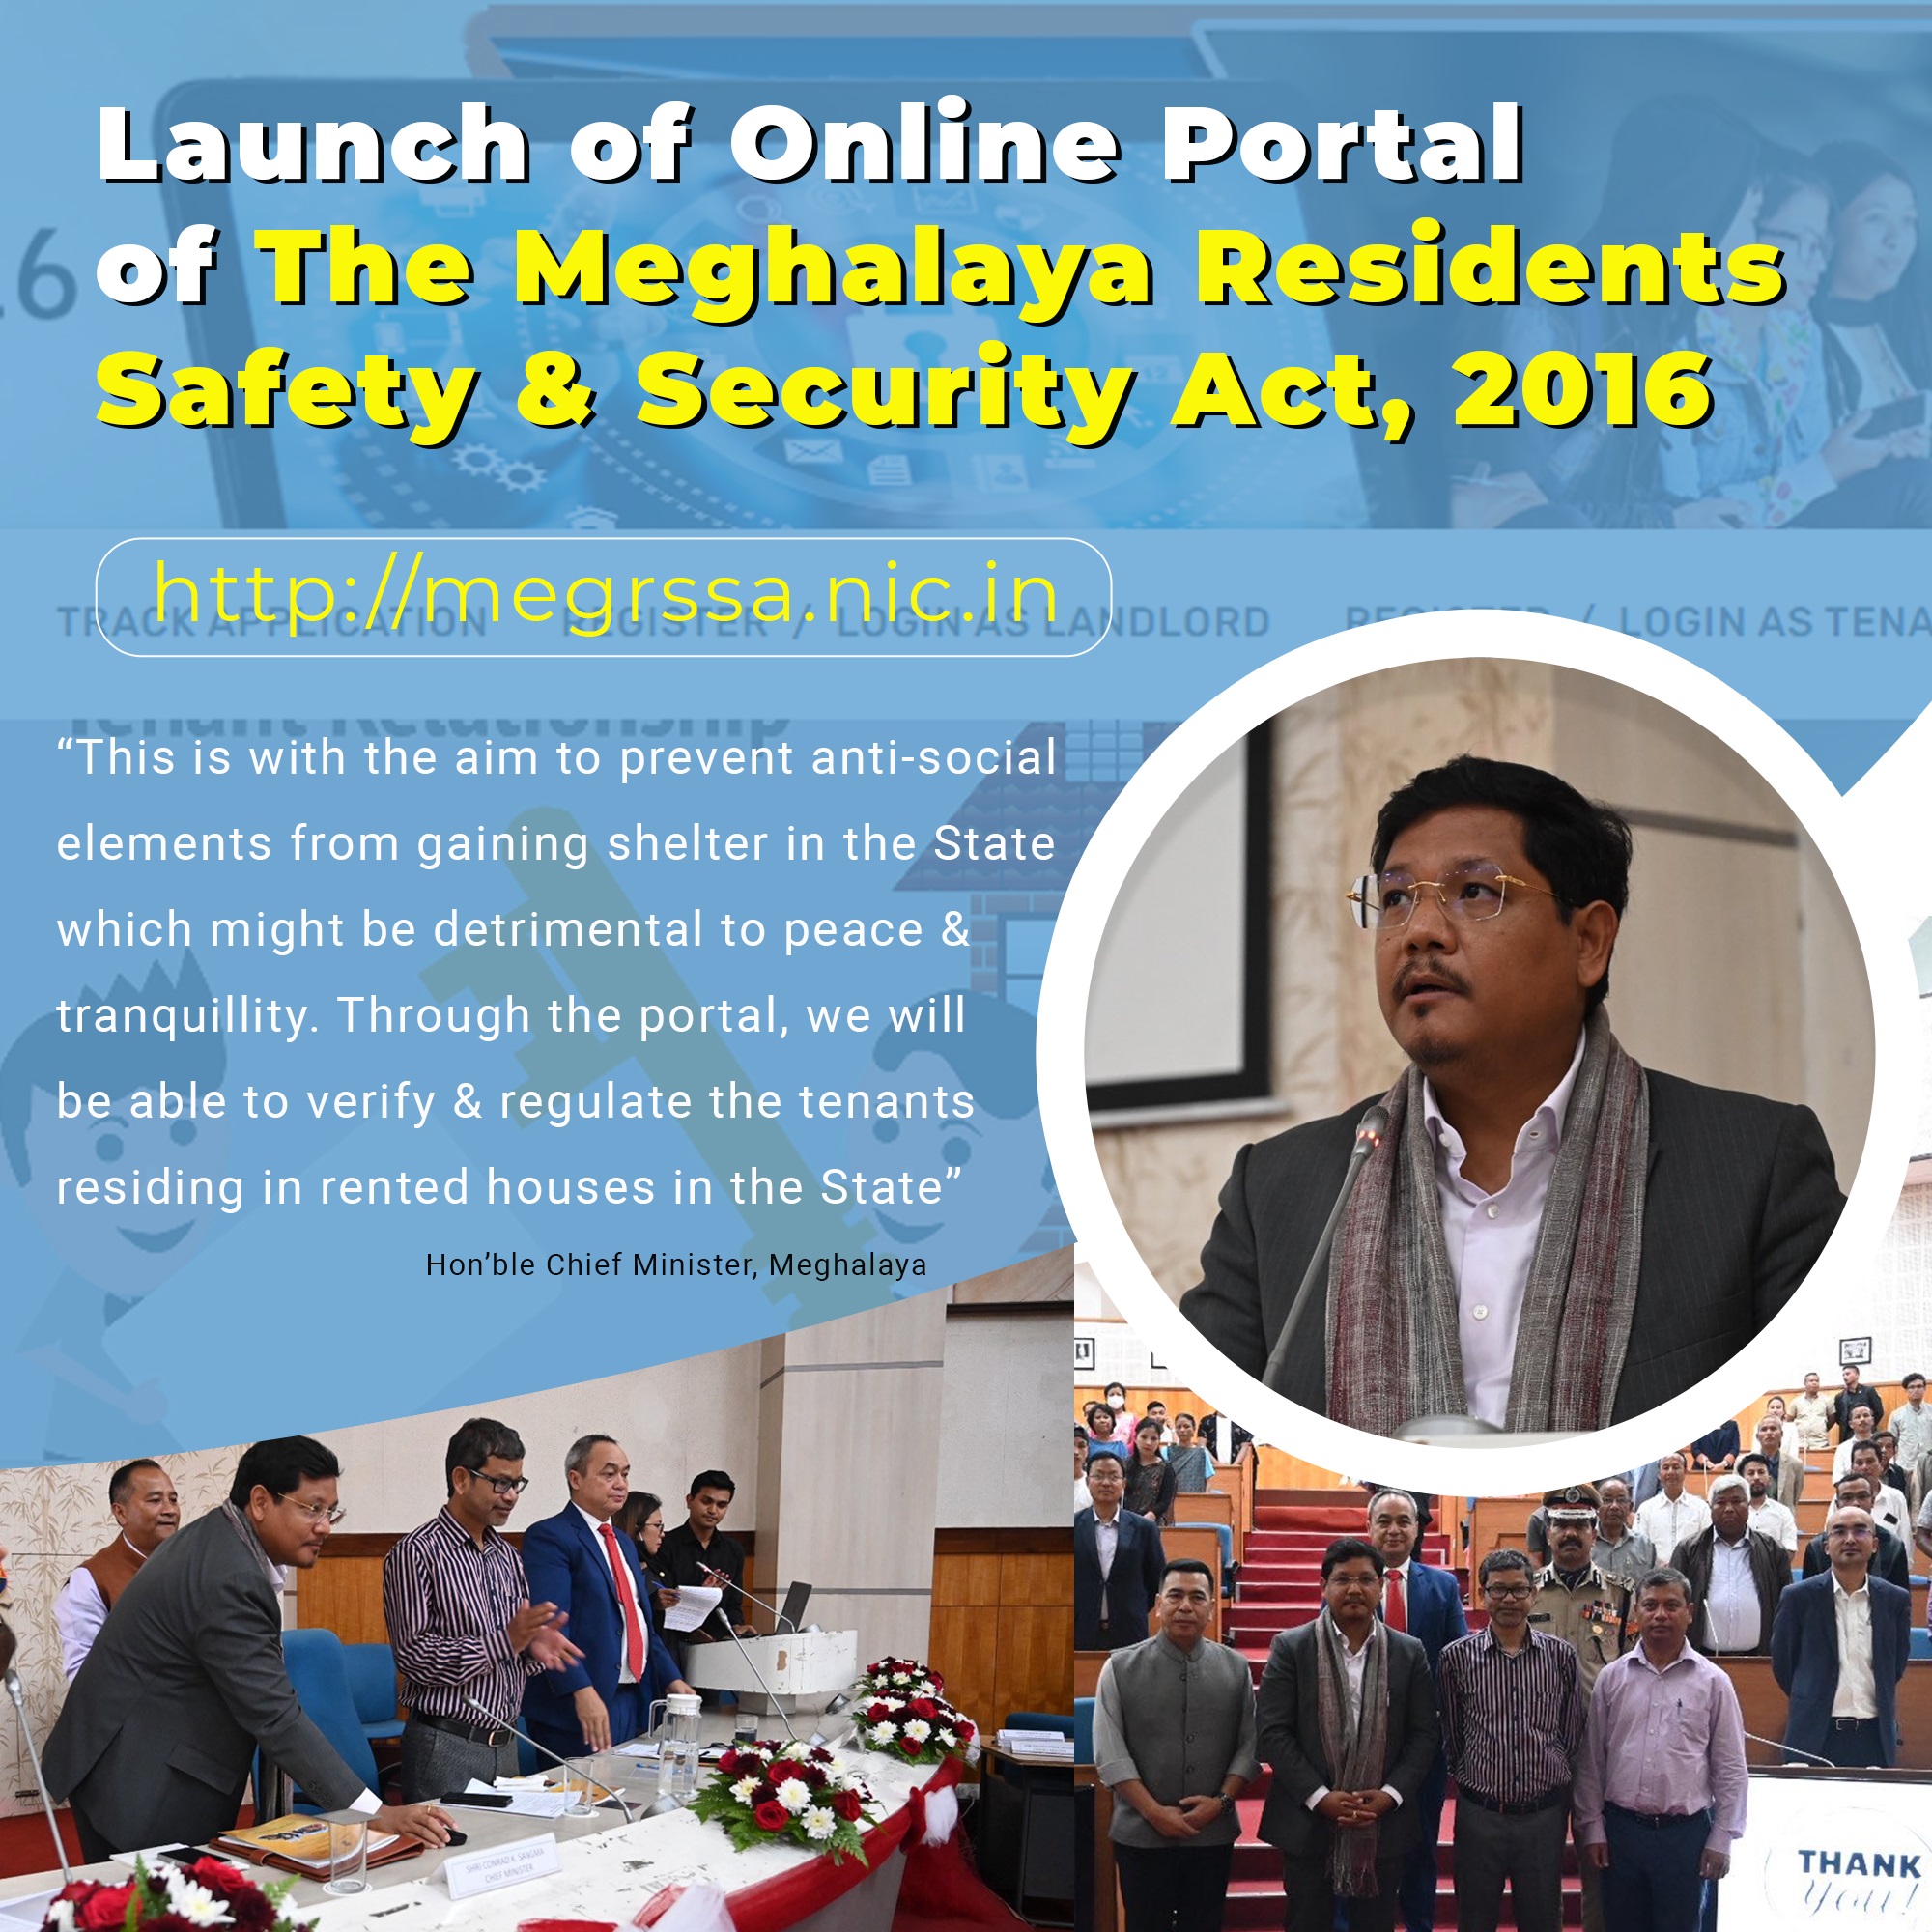 Image of मेघालय के माननीय मुख्यमंत्री ने ‘मेघालय निवासी सुरक्षा और सुरक्षा अधिनियम, 2016’ का पोर्टल लॉन्च किया।